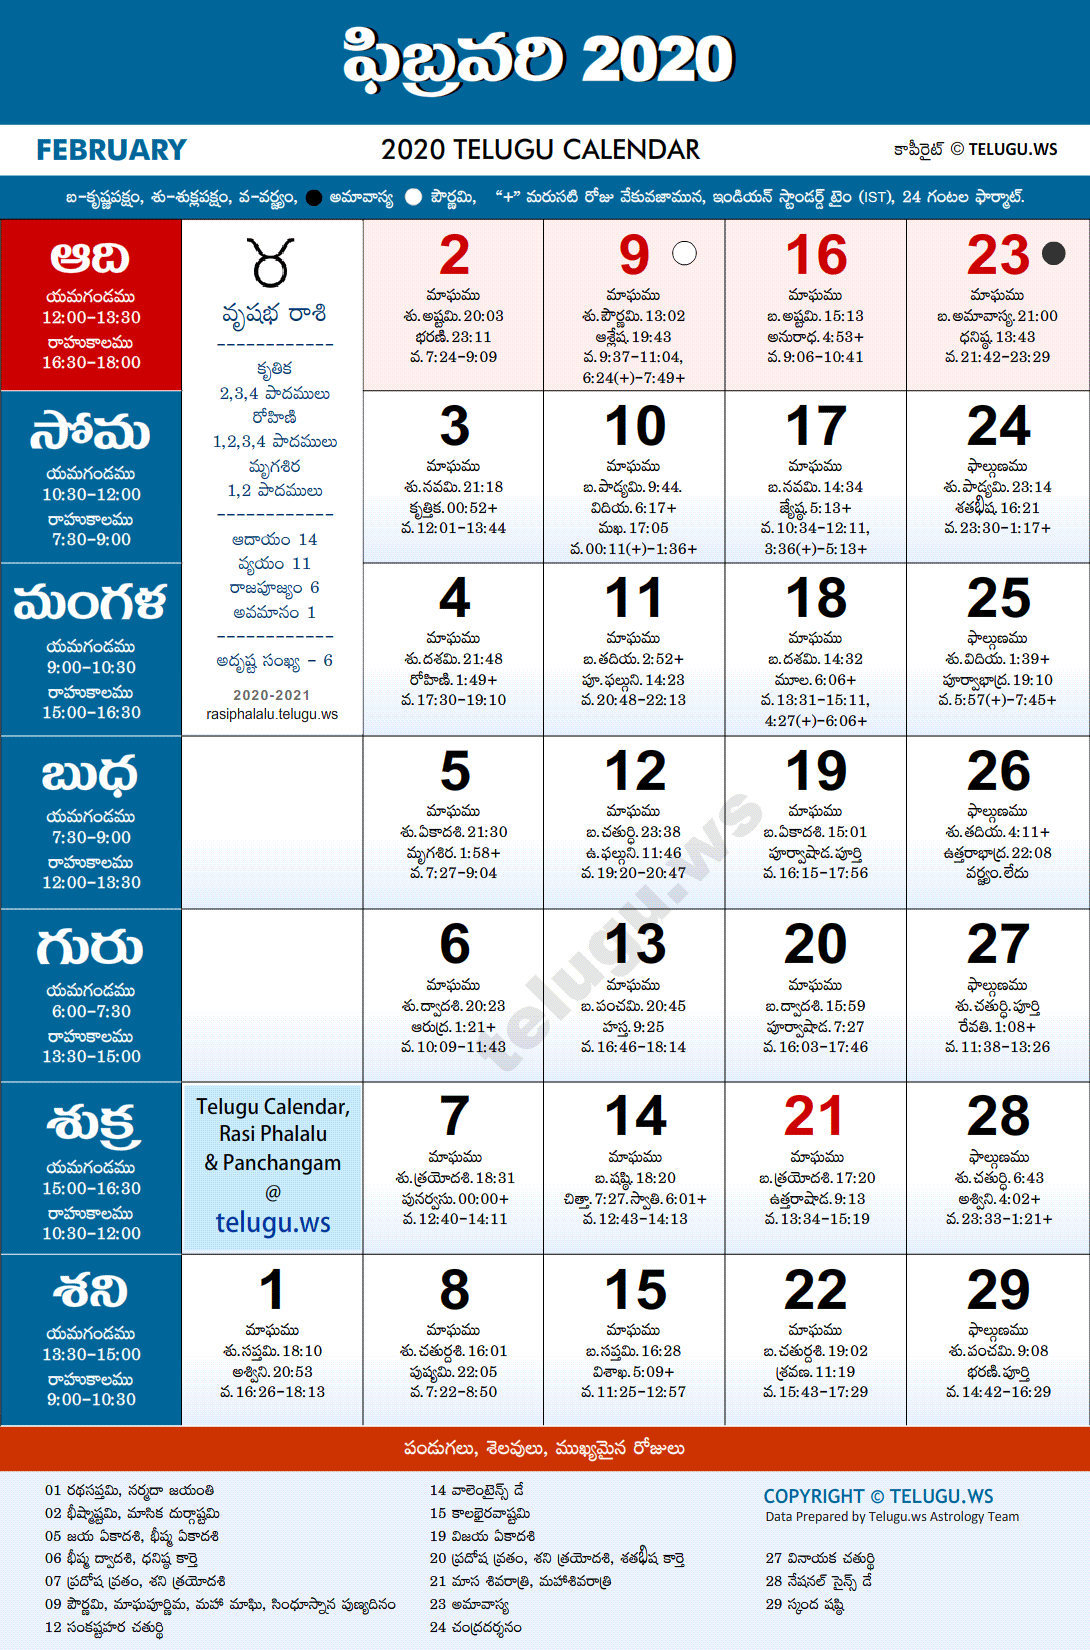 Telugu Calendar 2020 February Festivals and Holidays